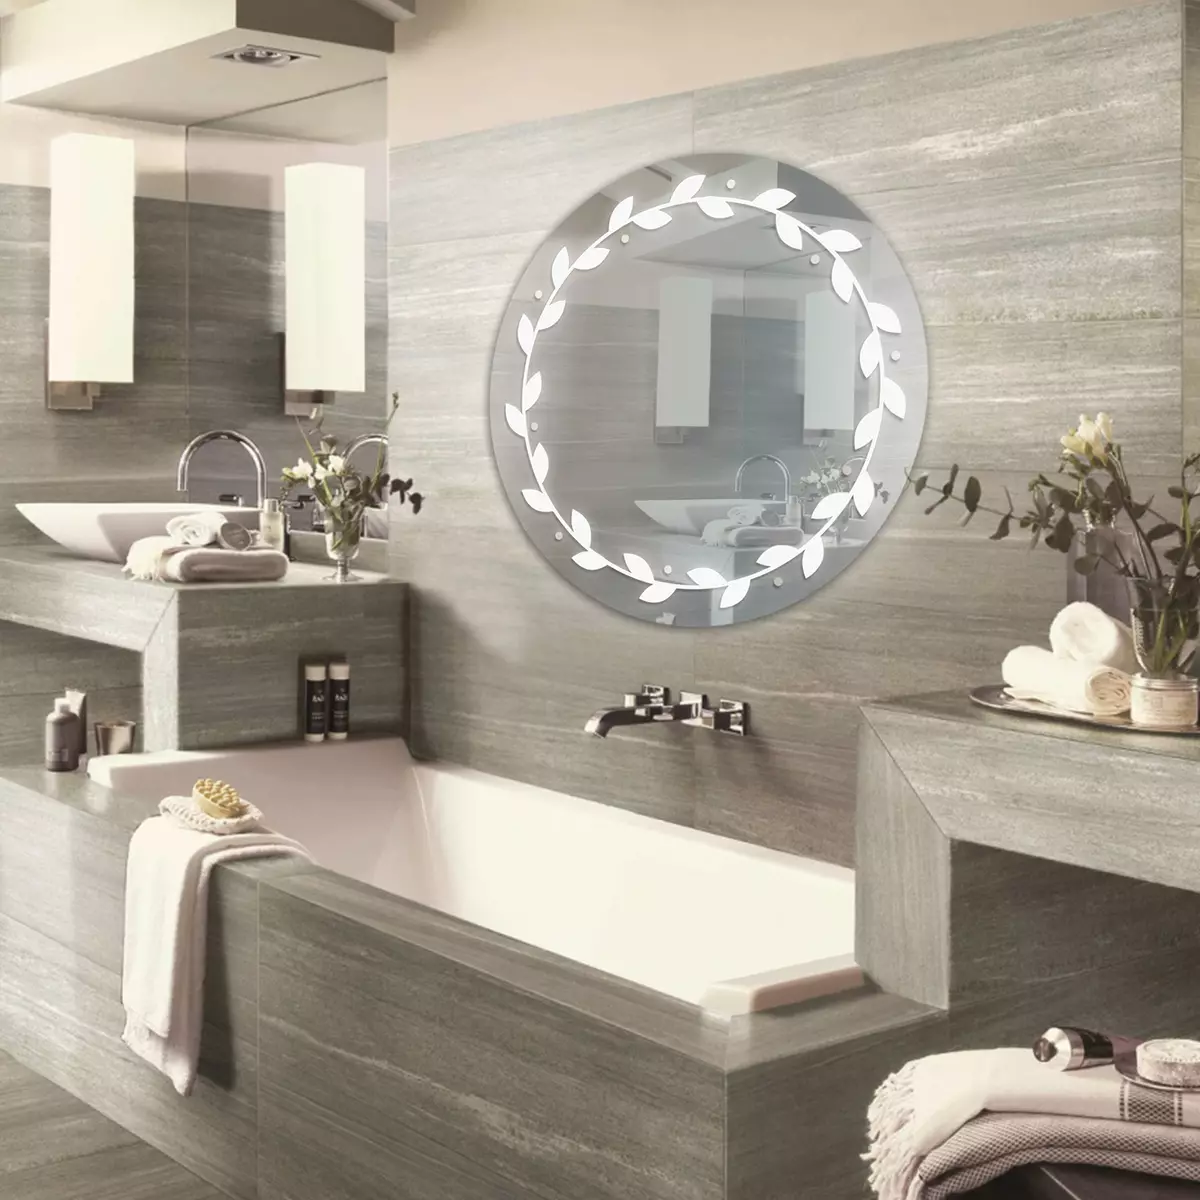 Miroir rond dans la salle de bain: miroirs design dans un cadre en bois, miroirs ronds de couleur noire et autre pour la salle de bain 10427_18